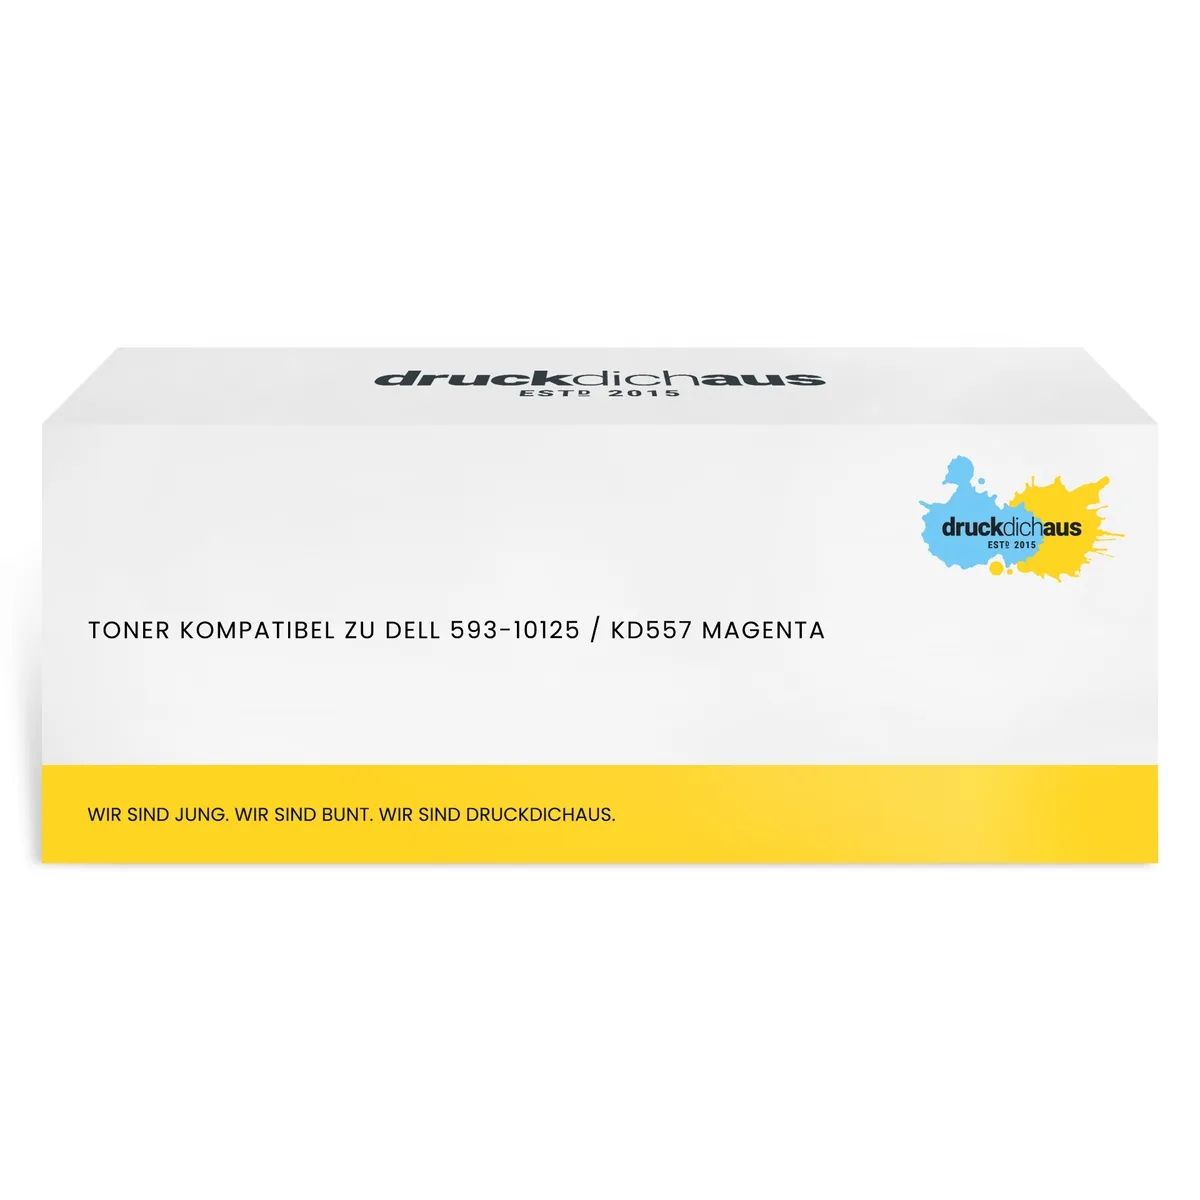 Toner kompatibel zu Dell 593-10125 / KD557 magenta